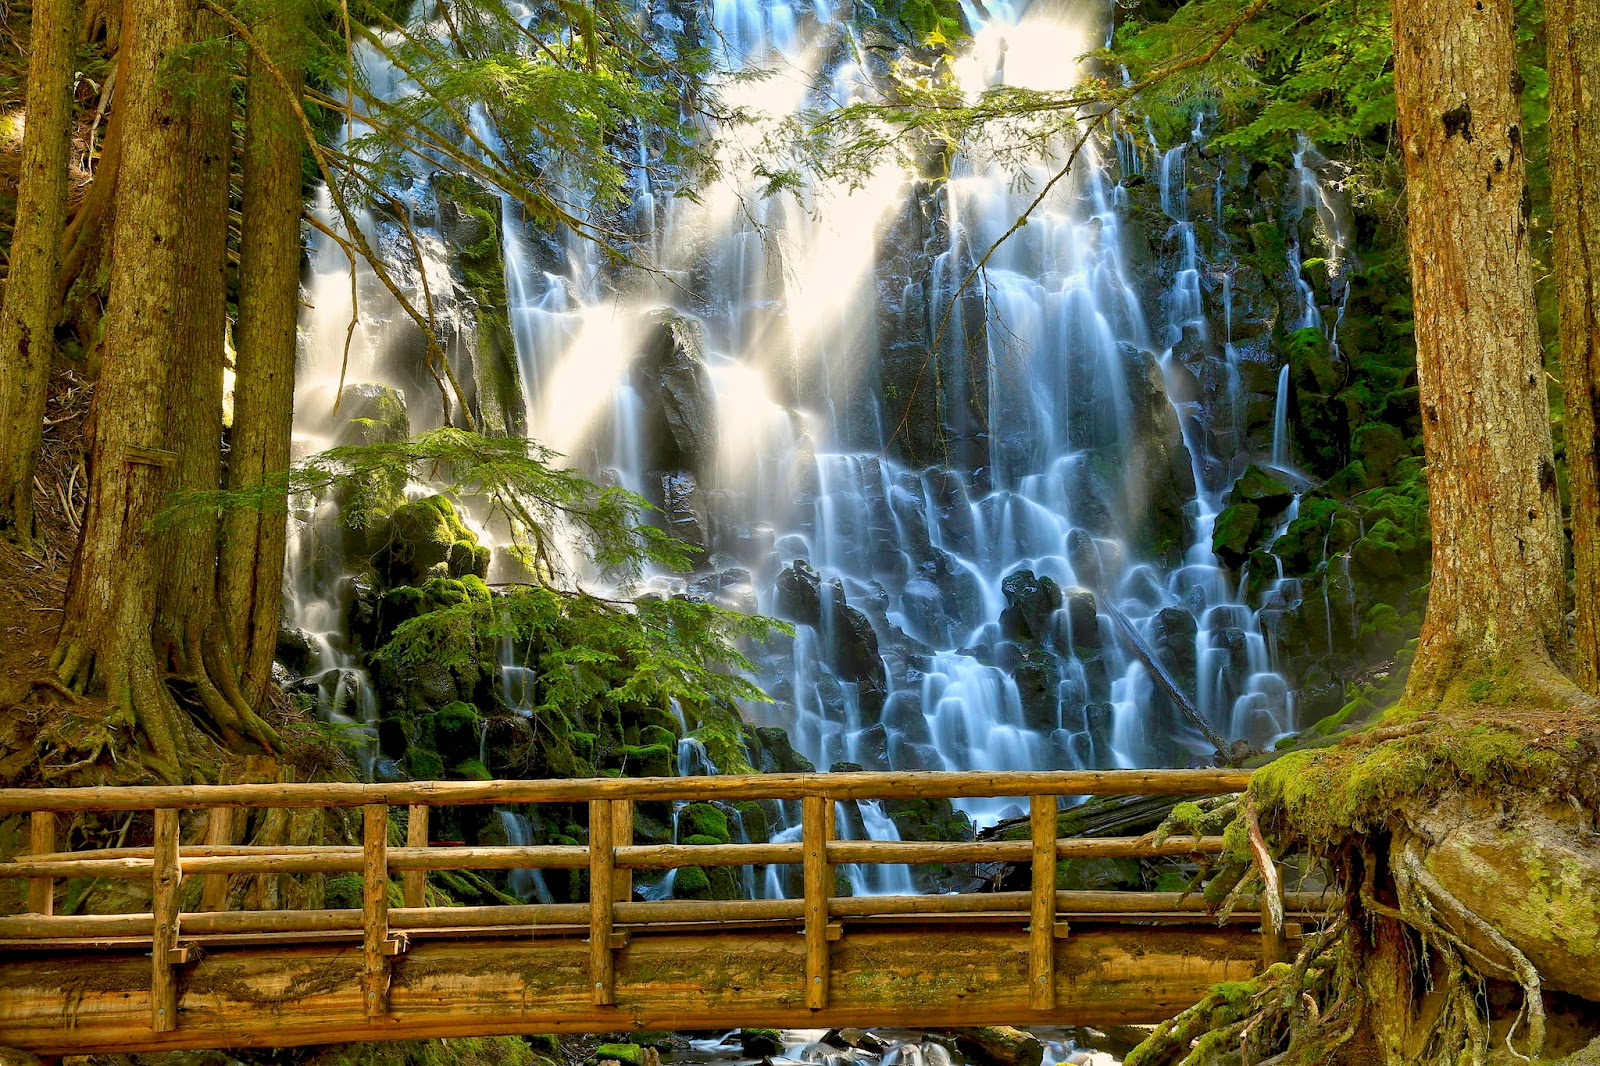 Banco de Imágenes Gratis: 33 fotografías de cascadas con hermosos paisajes  naturales